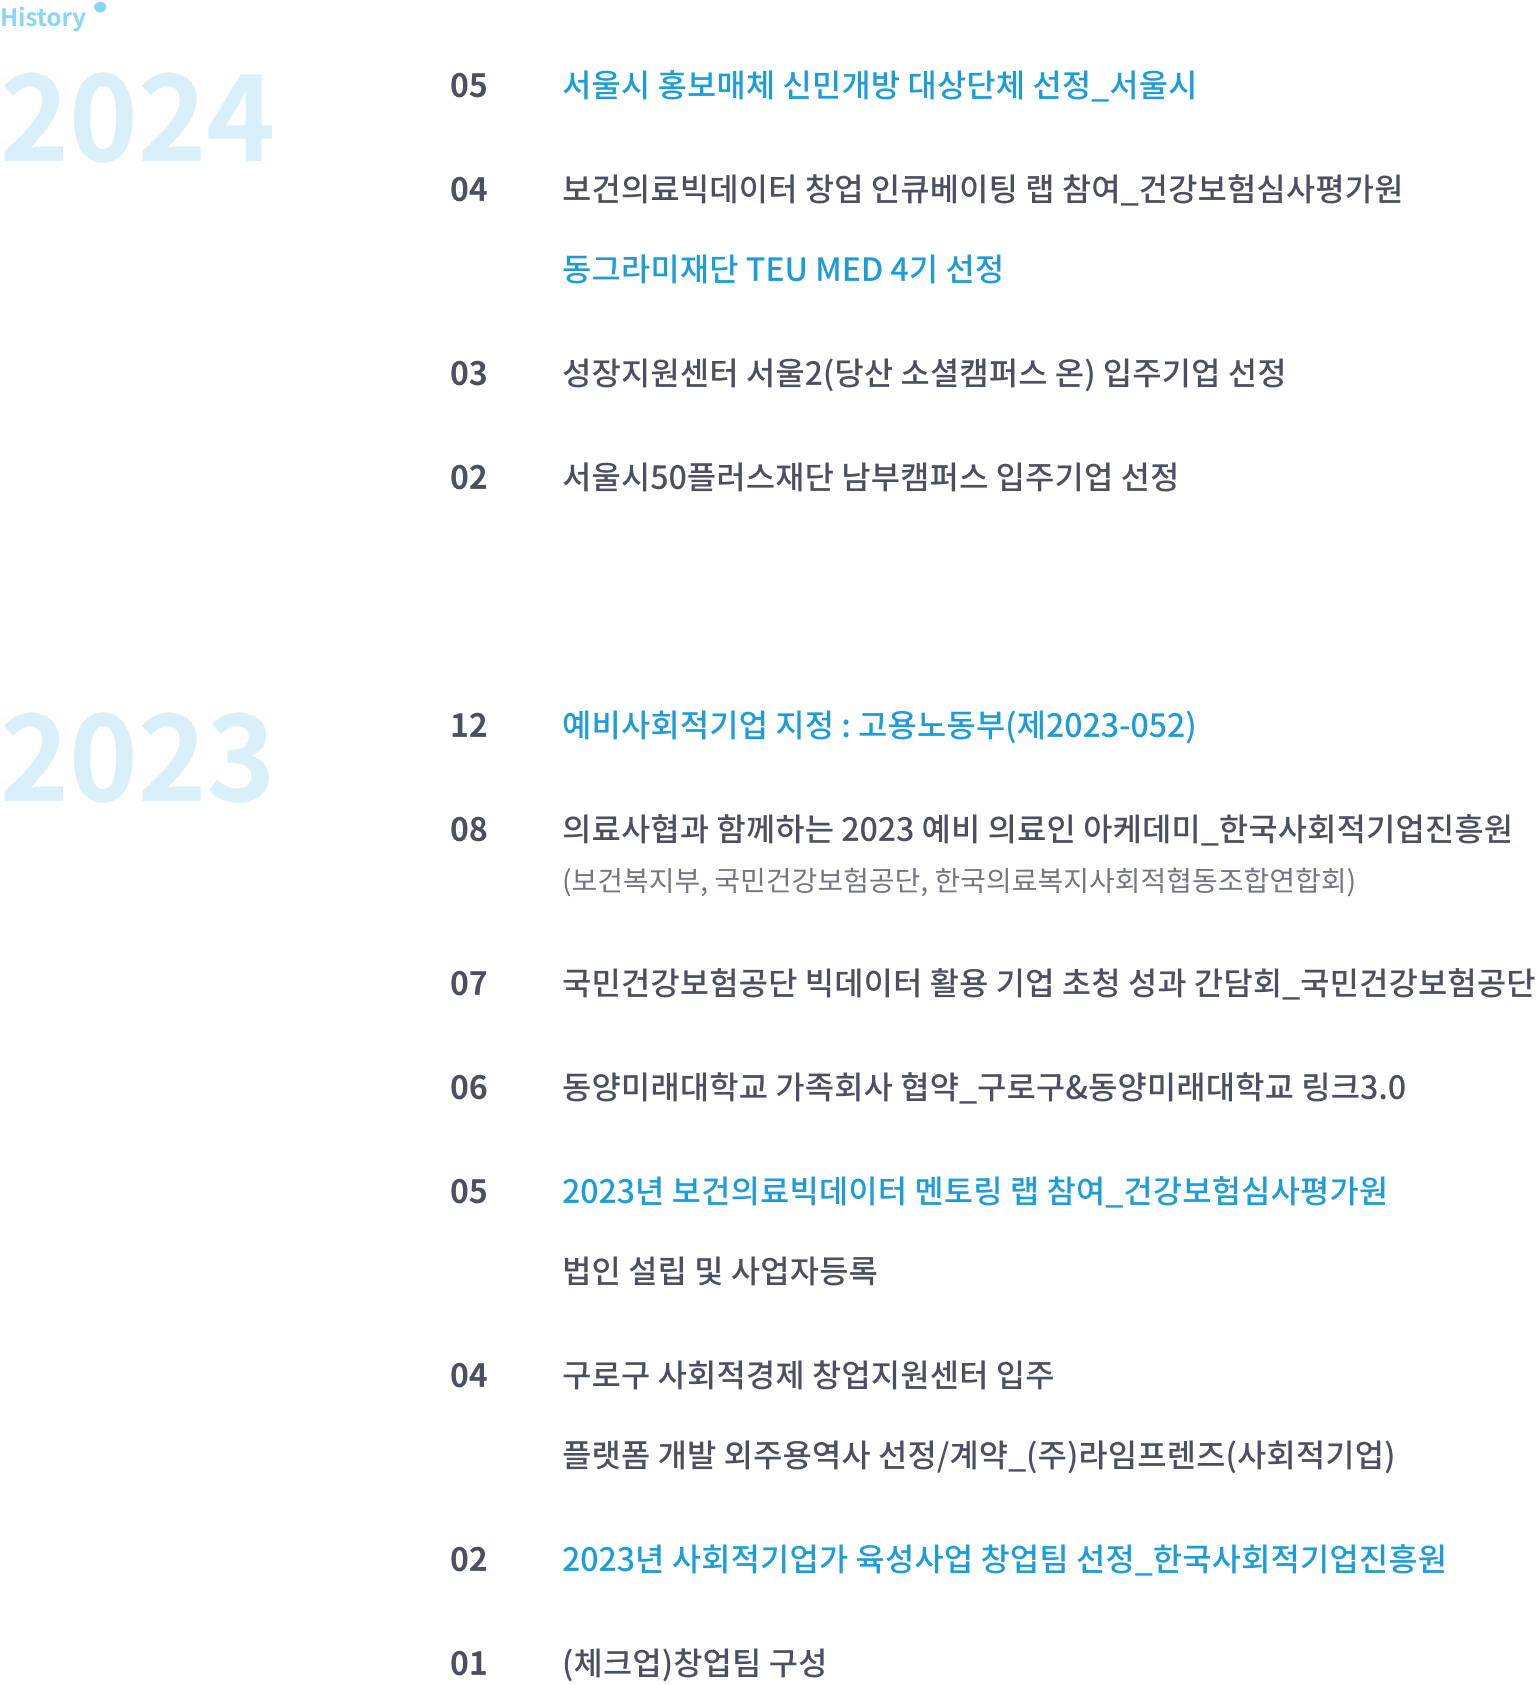 체크타임의 주요 연혁. 2024년 5월 예비사회적기업 지정: 고용노동부(제2023-052)